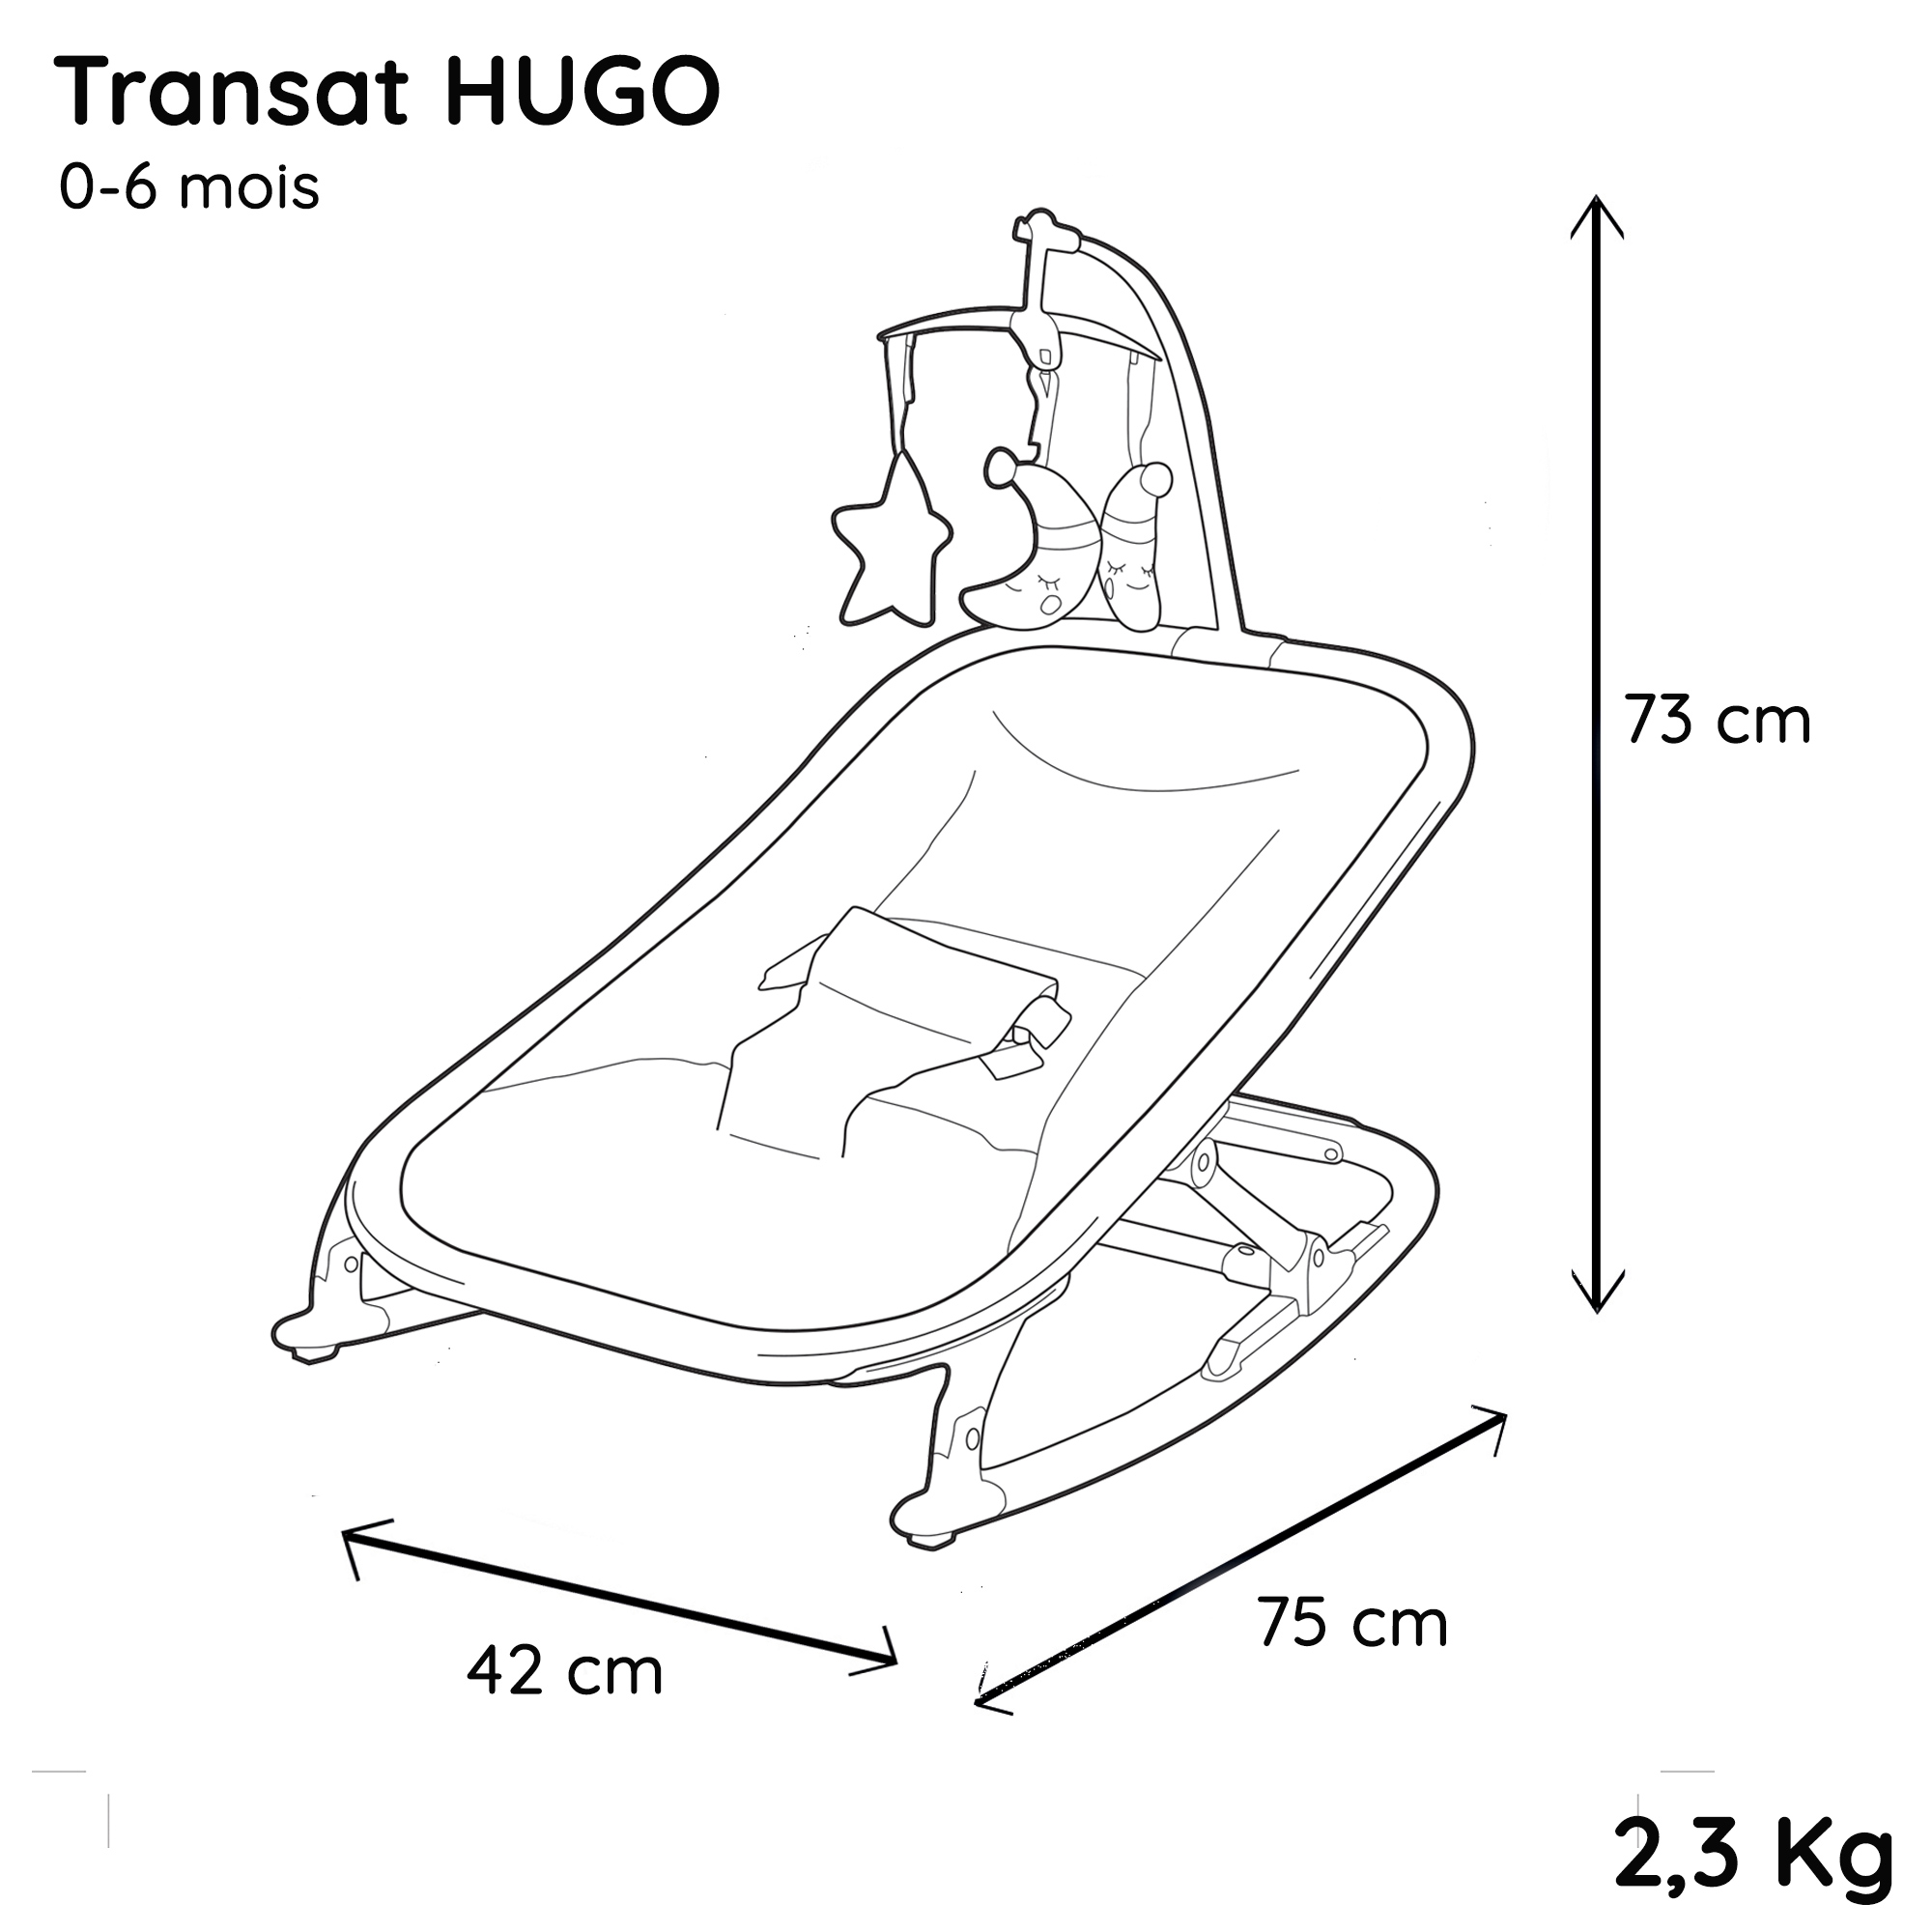 Transat HUGO 0-6 mois - Jeux d'éveils inclus - Mycarsit